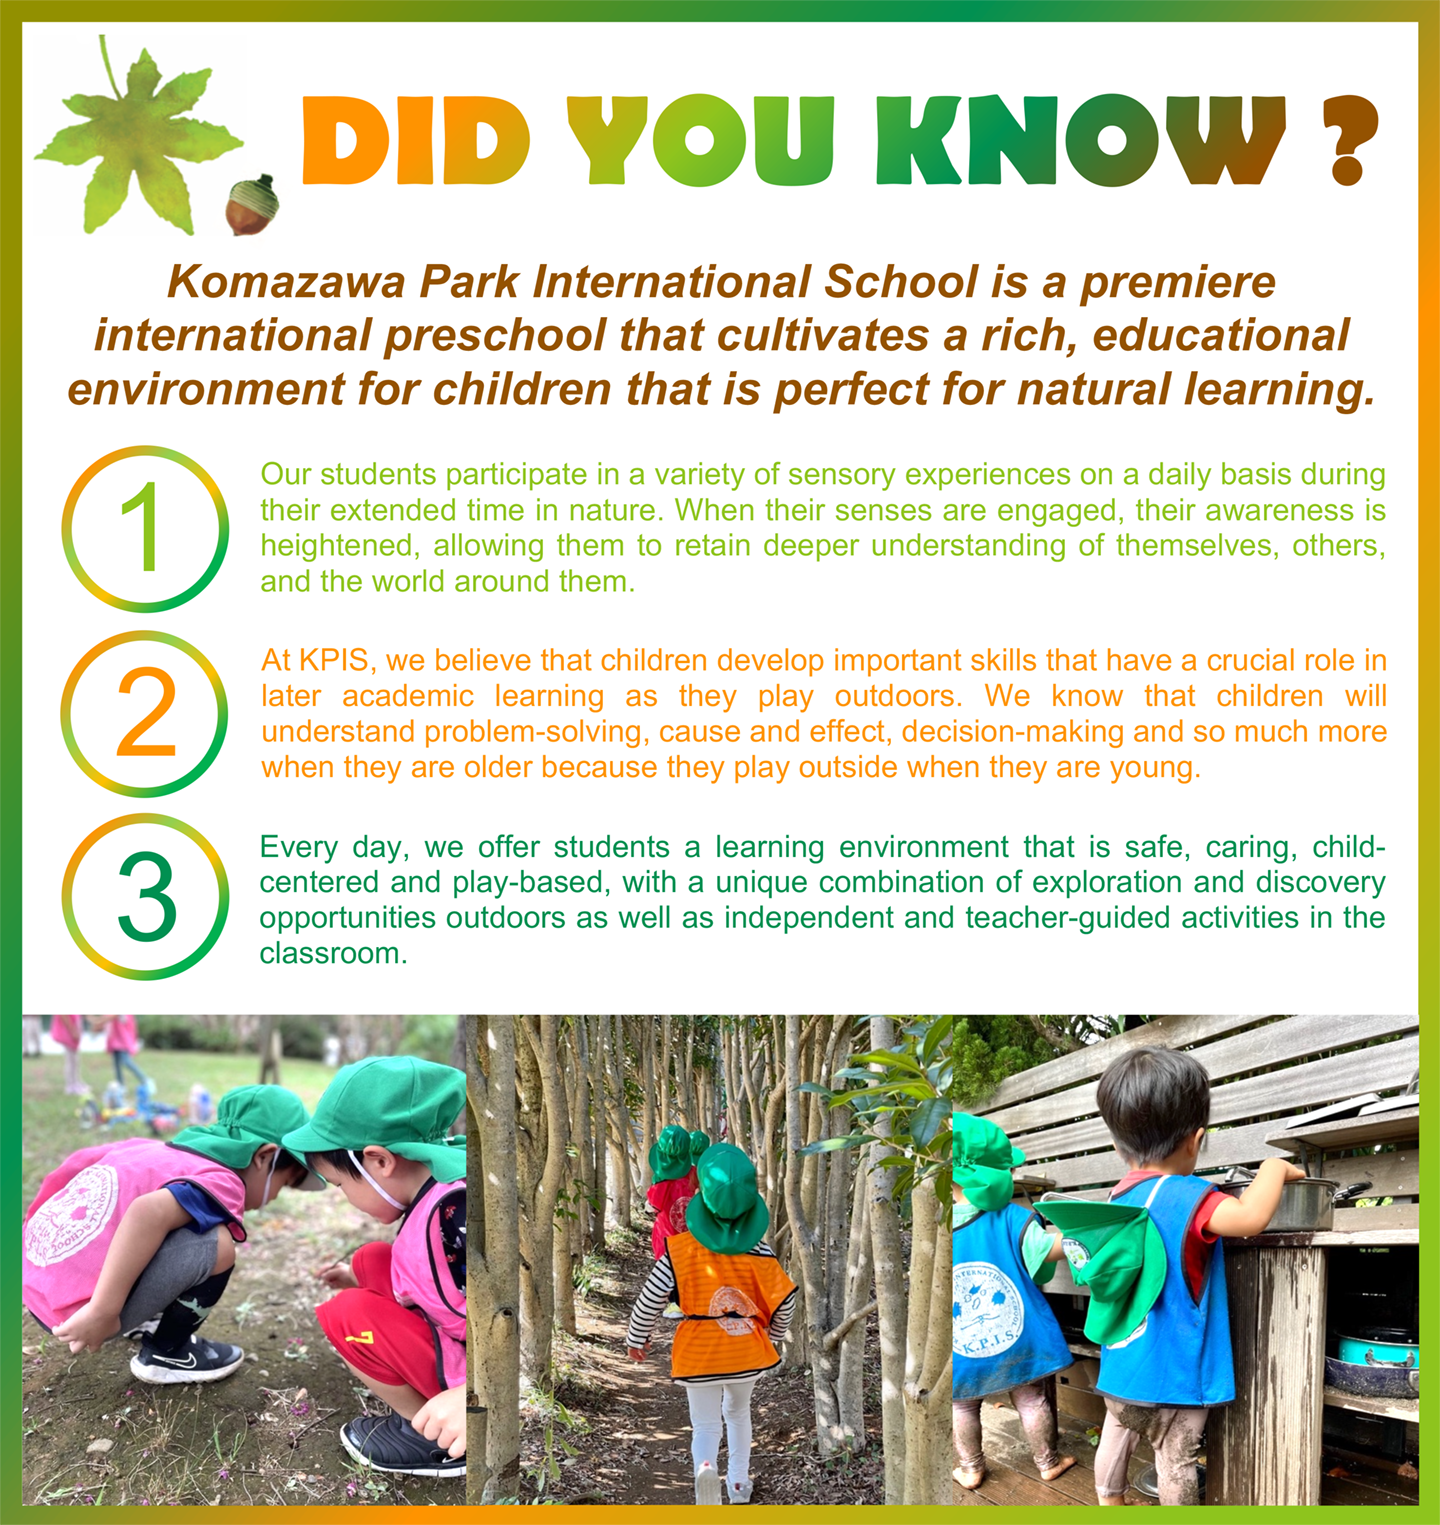 Komazawa park international school | Did You Know